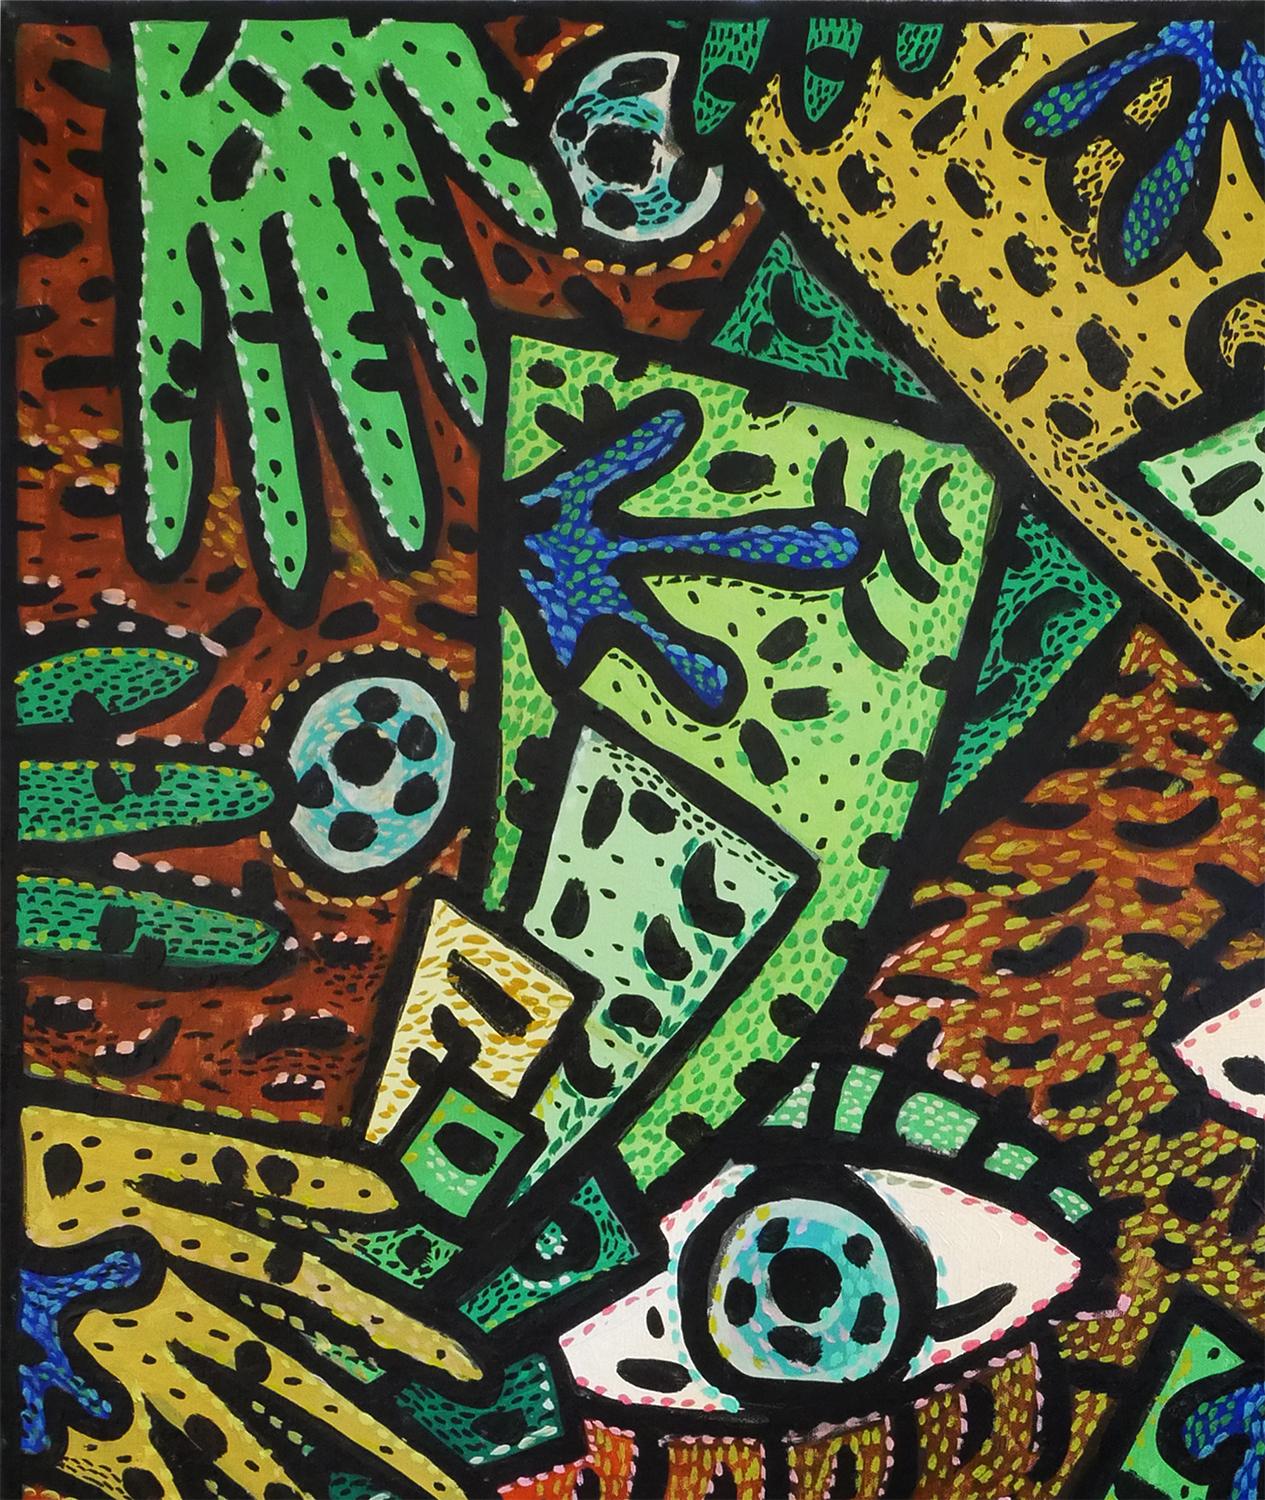 Zeitgenössisches abstraktes Gemälde in Grün, Blau und Gelb, „Addicted to Geld“ – Art von Richard Fluhr